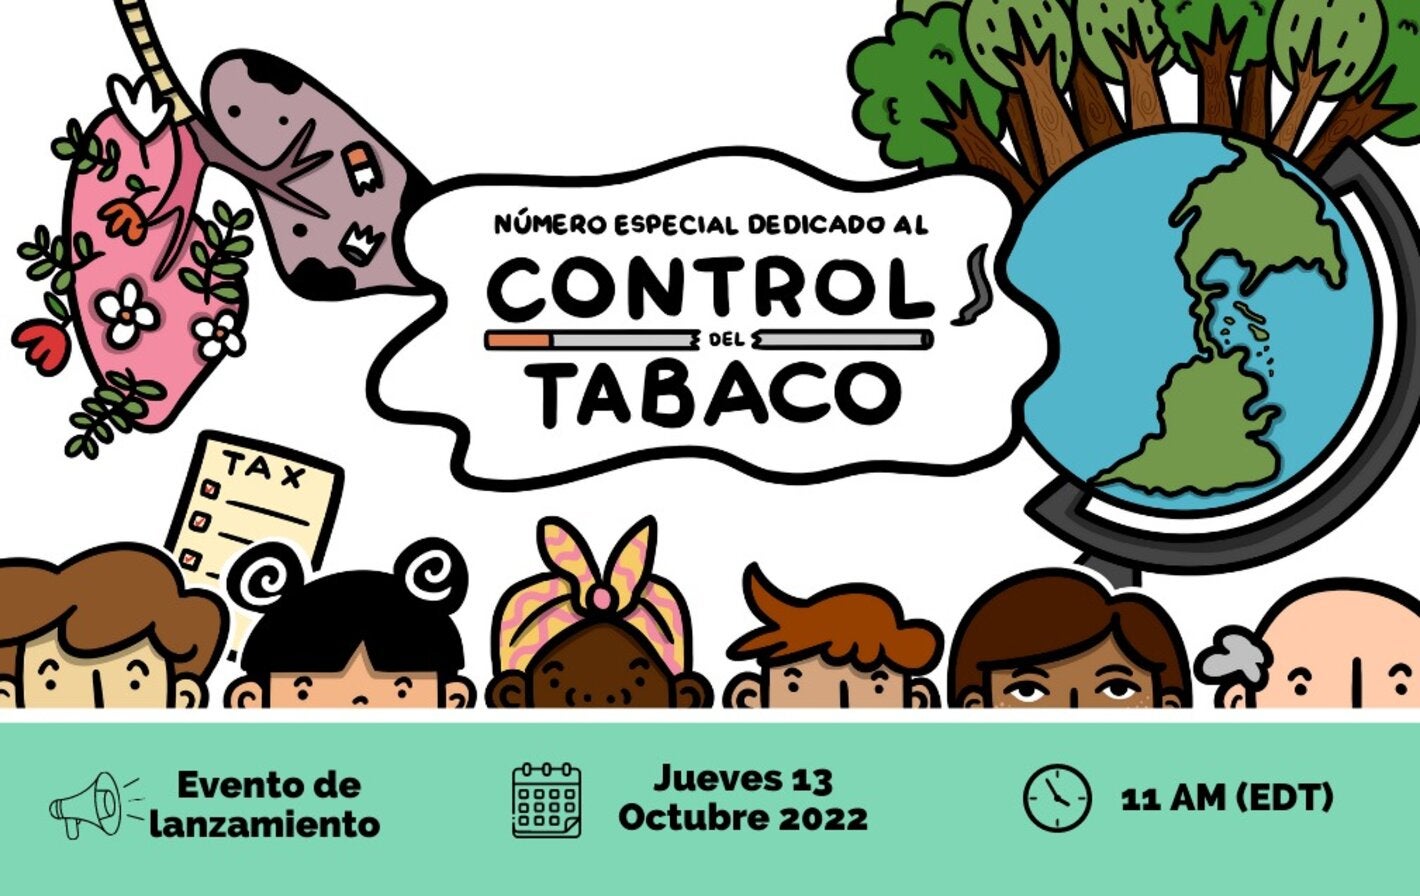 Lanzamiento del número especial dedicado al control del tabaco